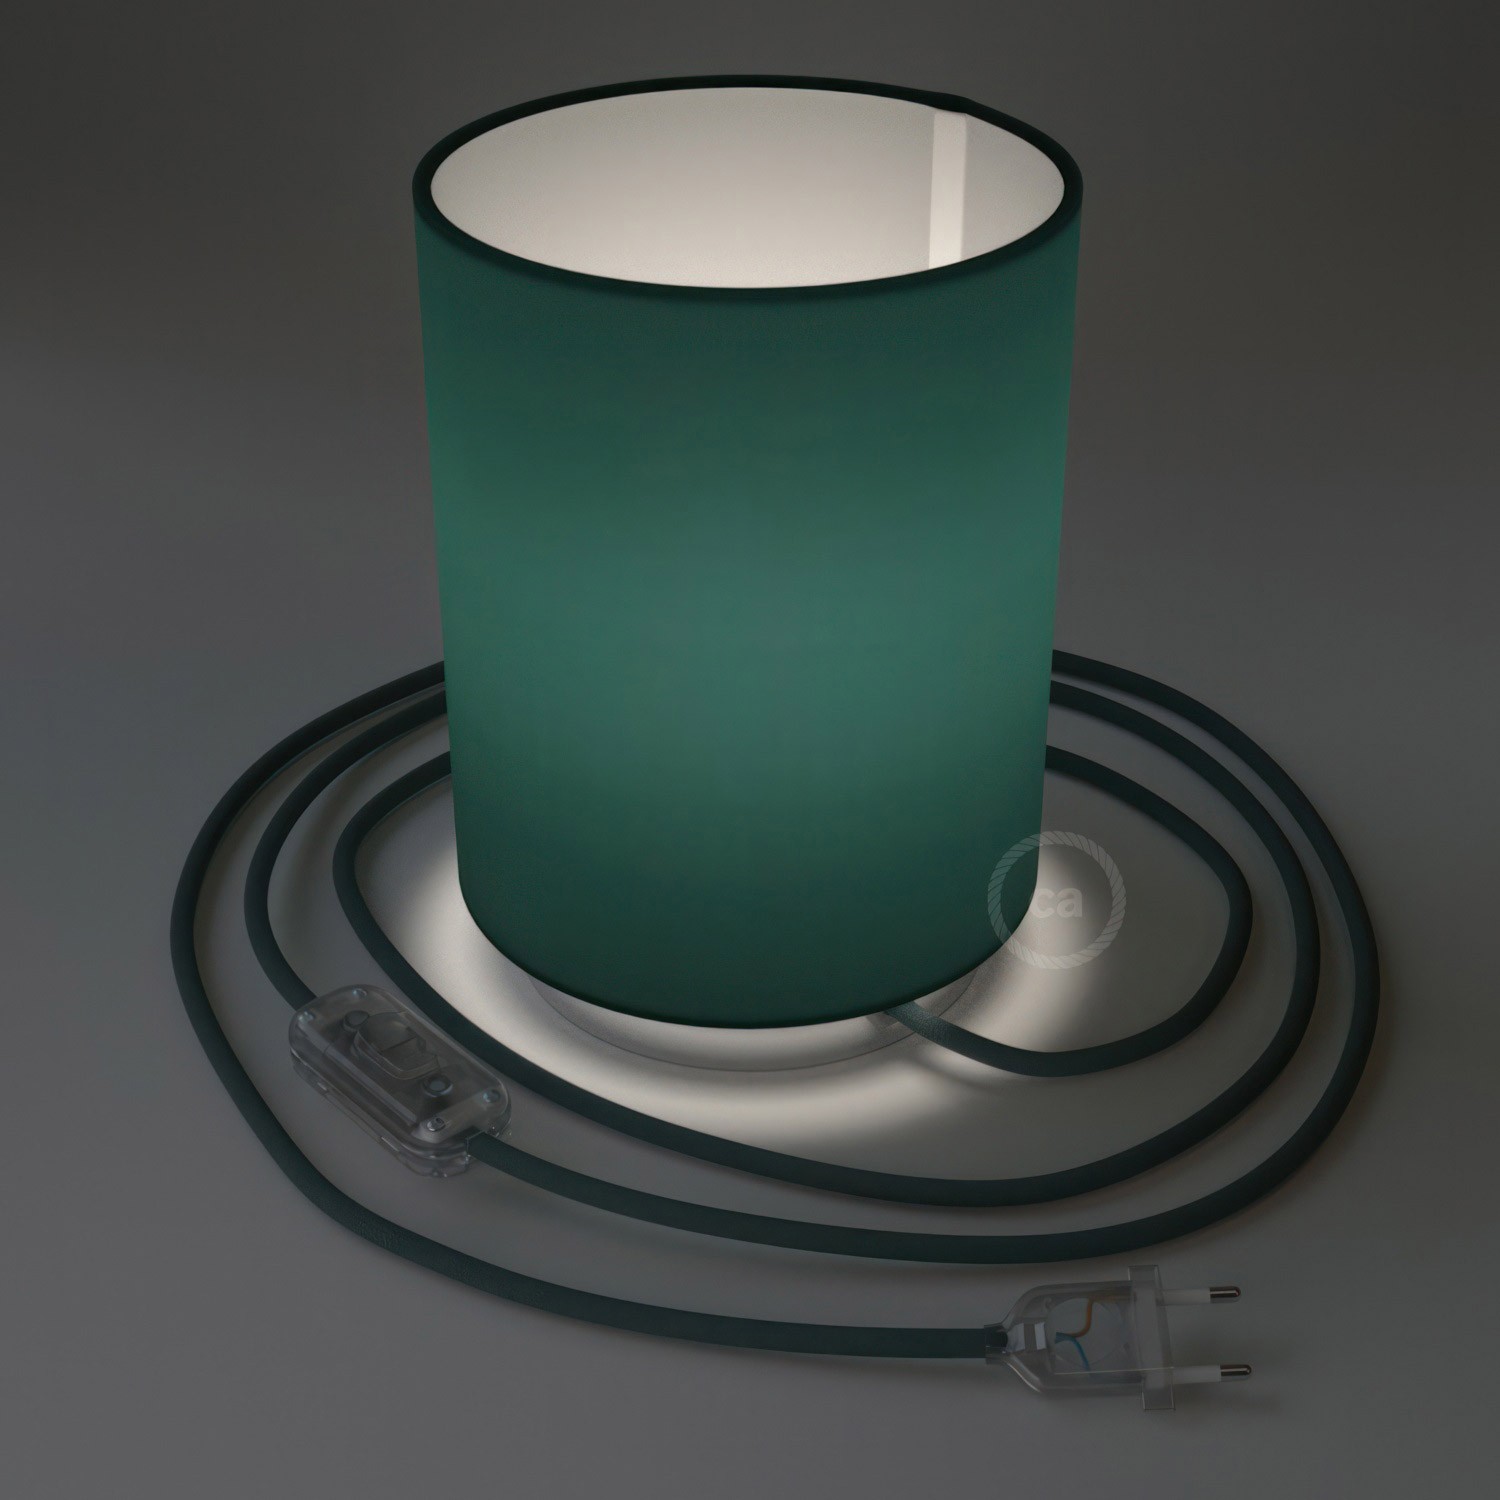 Posaluce Metal met Cilindro lampenkap van petrol cinette, inclusief lichtbron, textielkabel, schakelaar en 2-polige stekker